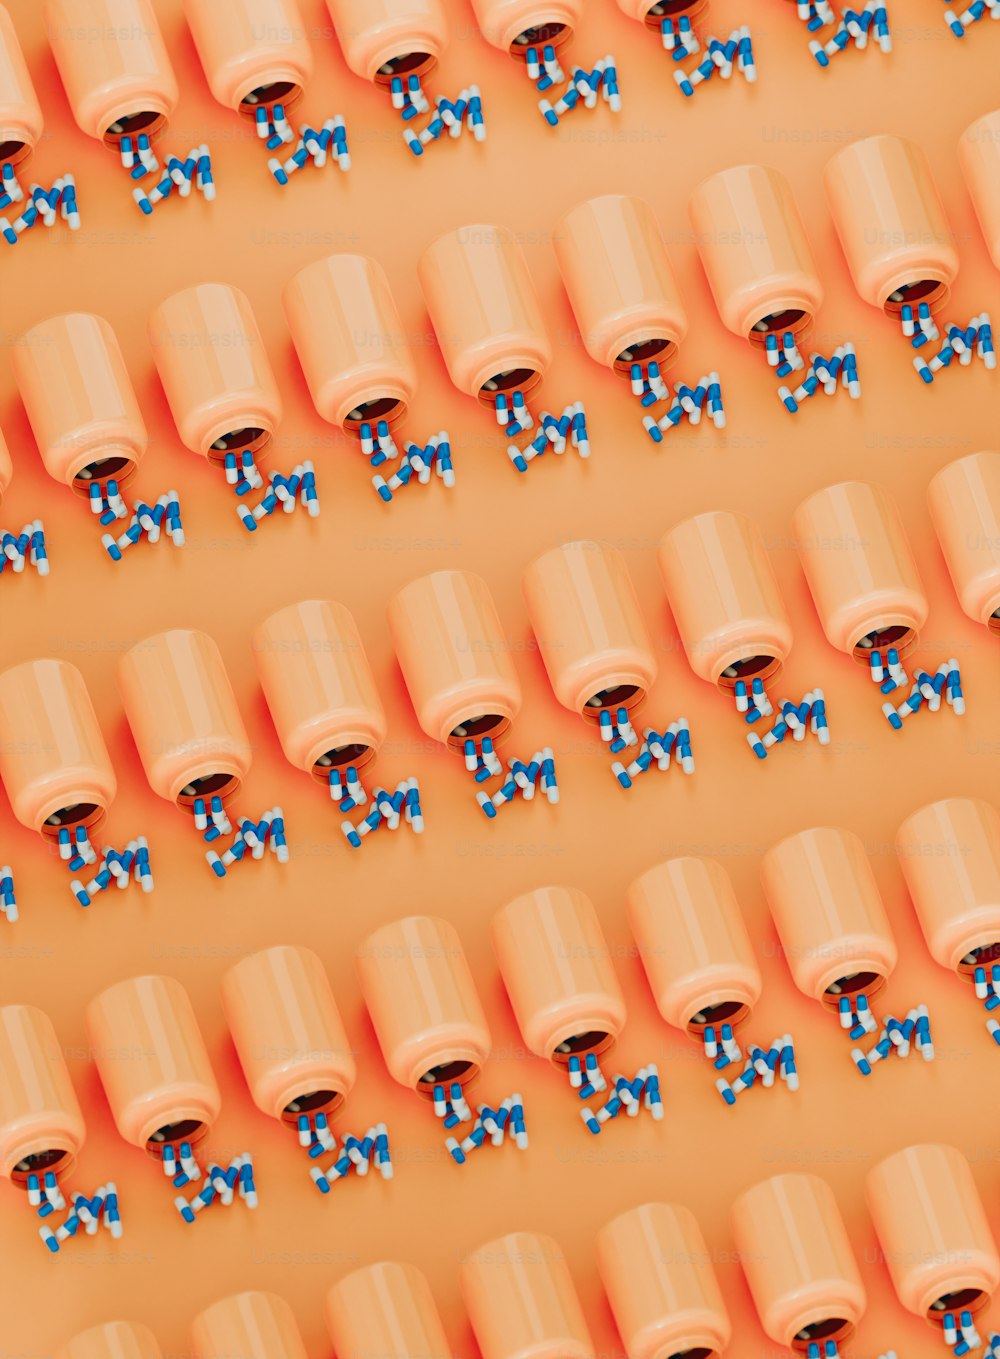 Un grupo de tazas naranjas con lazos azules en ellas